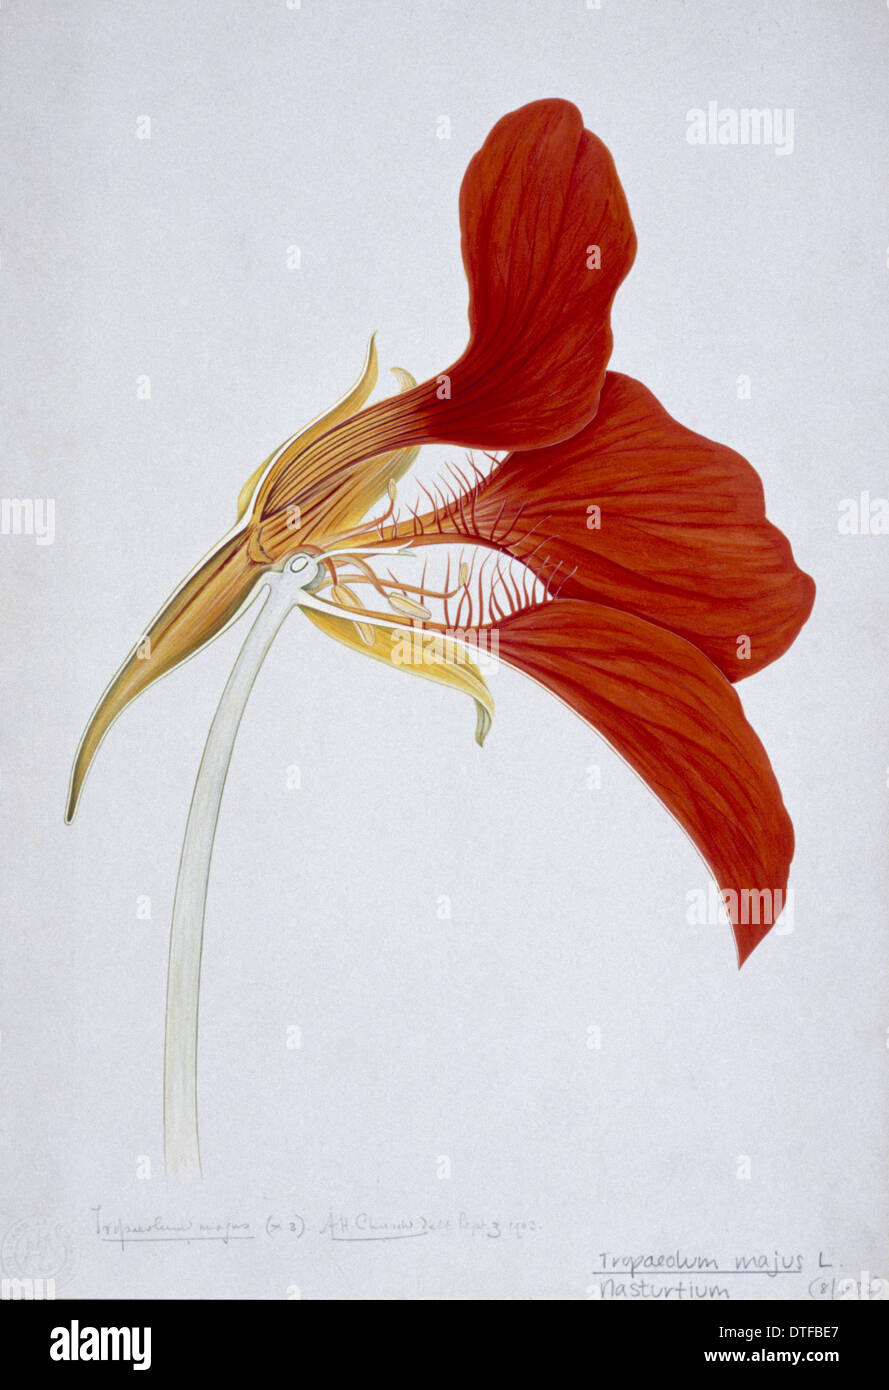 Illustration de la fleur d'Arthur Church Banque D'Images